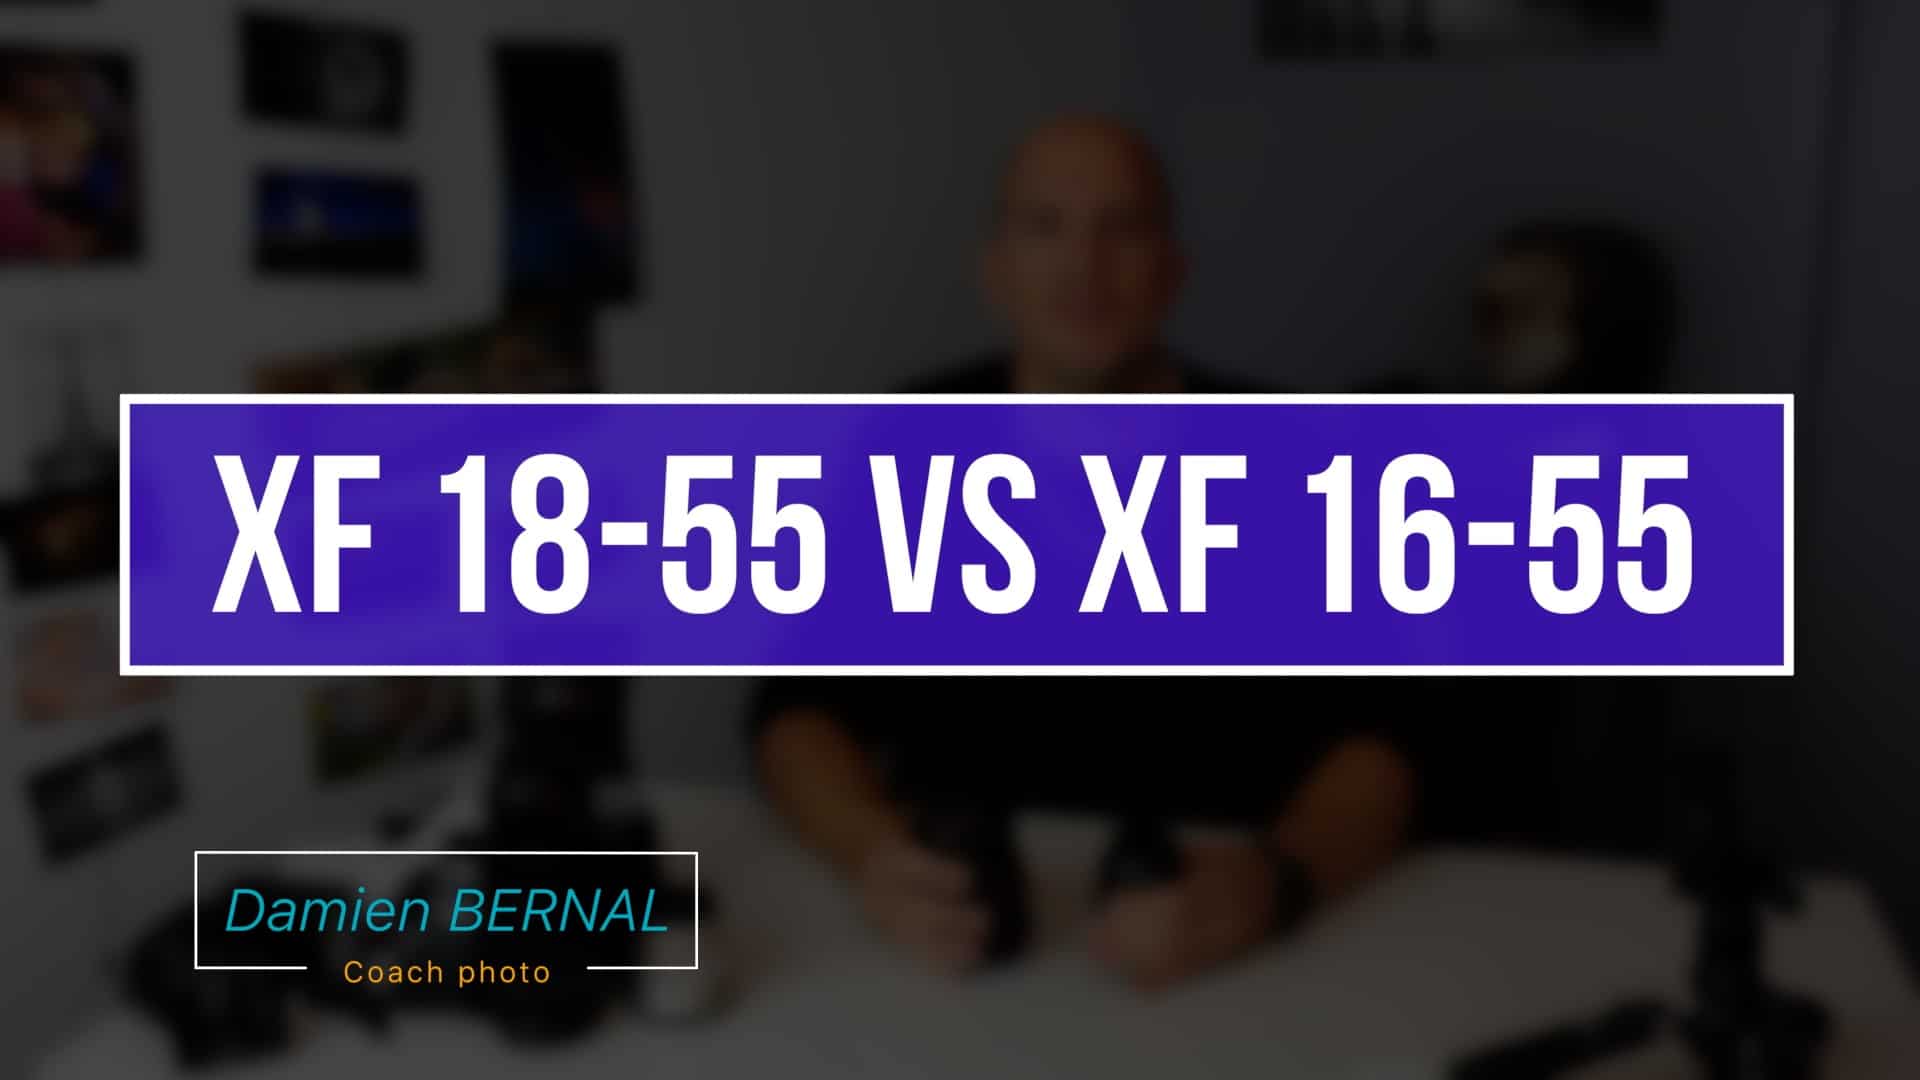 XF 18-55 vs XF 16-55